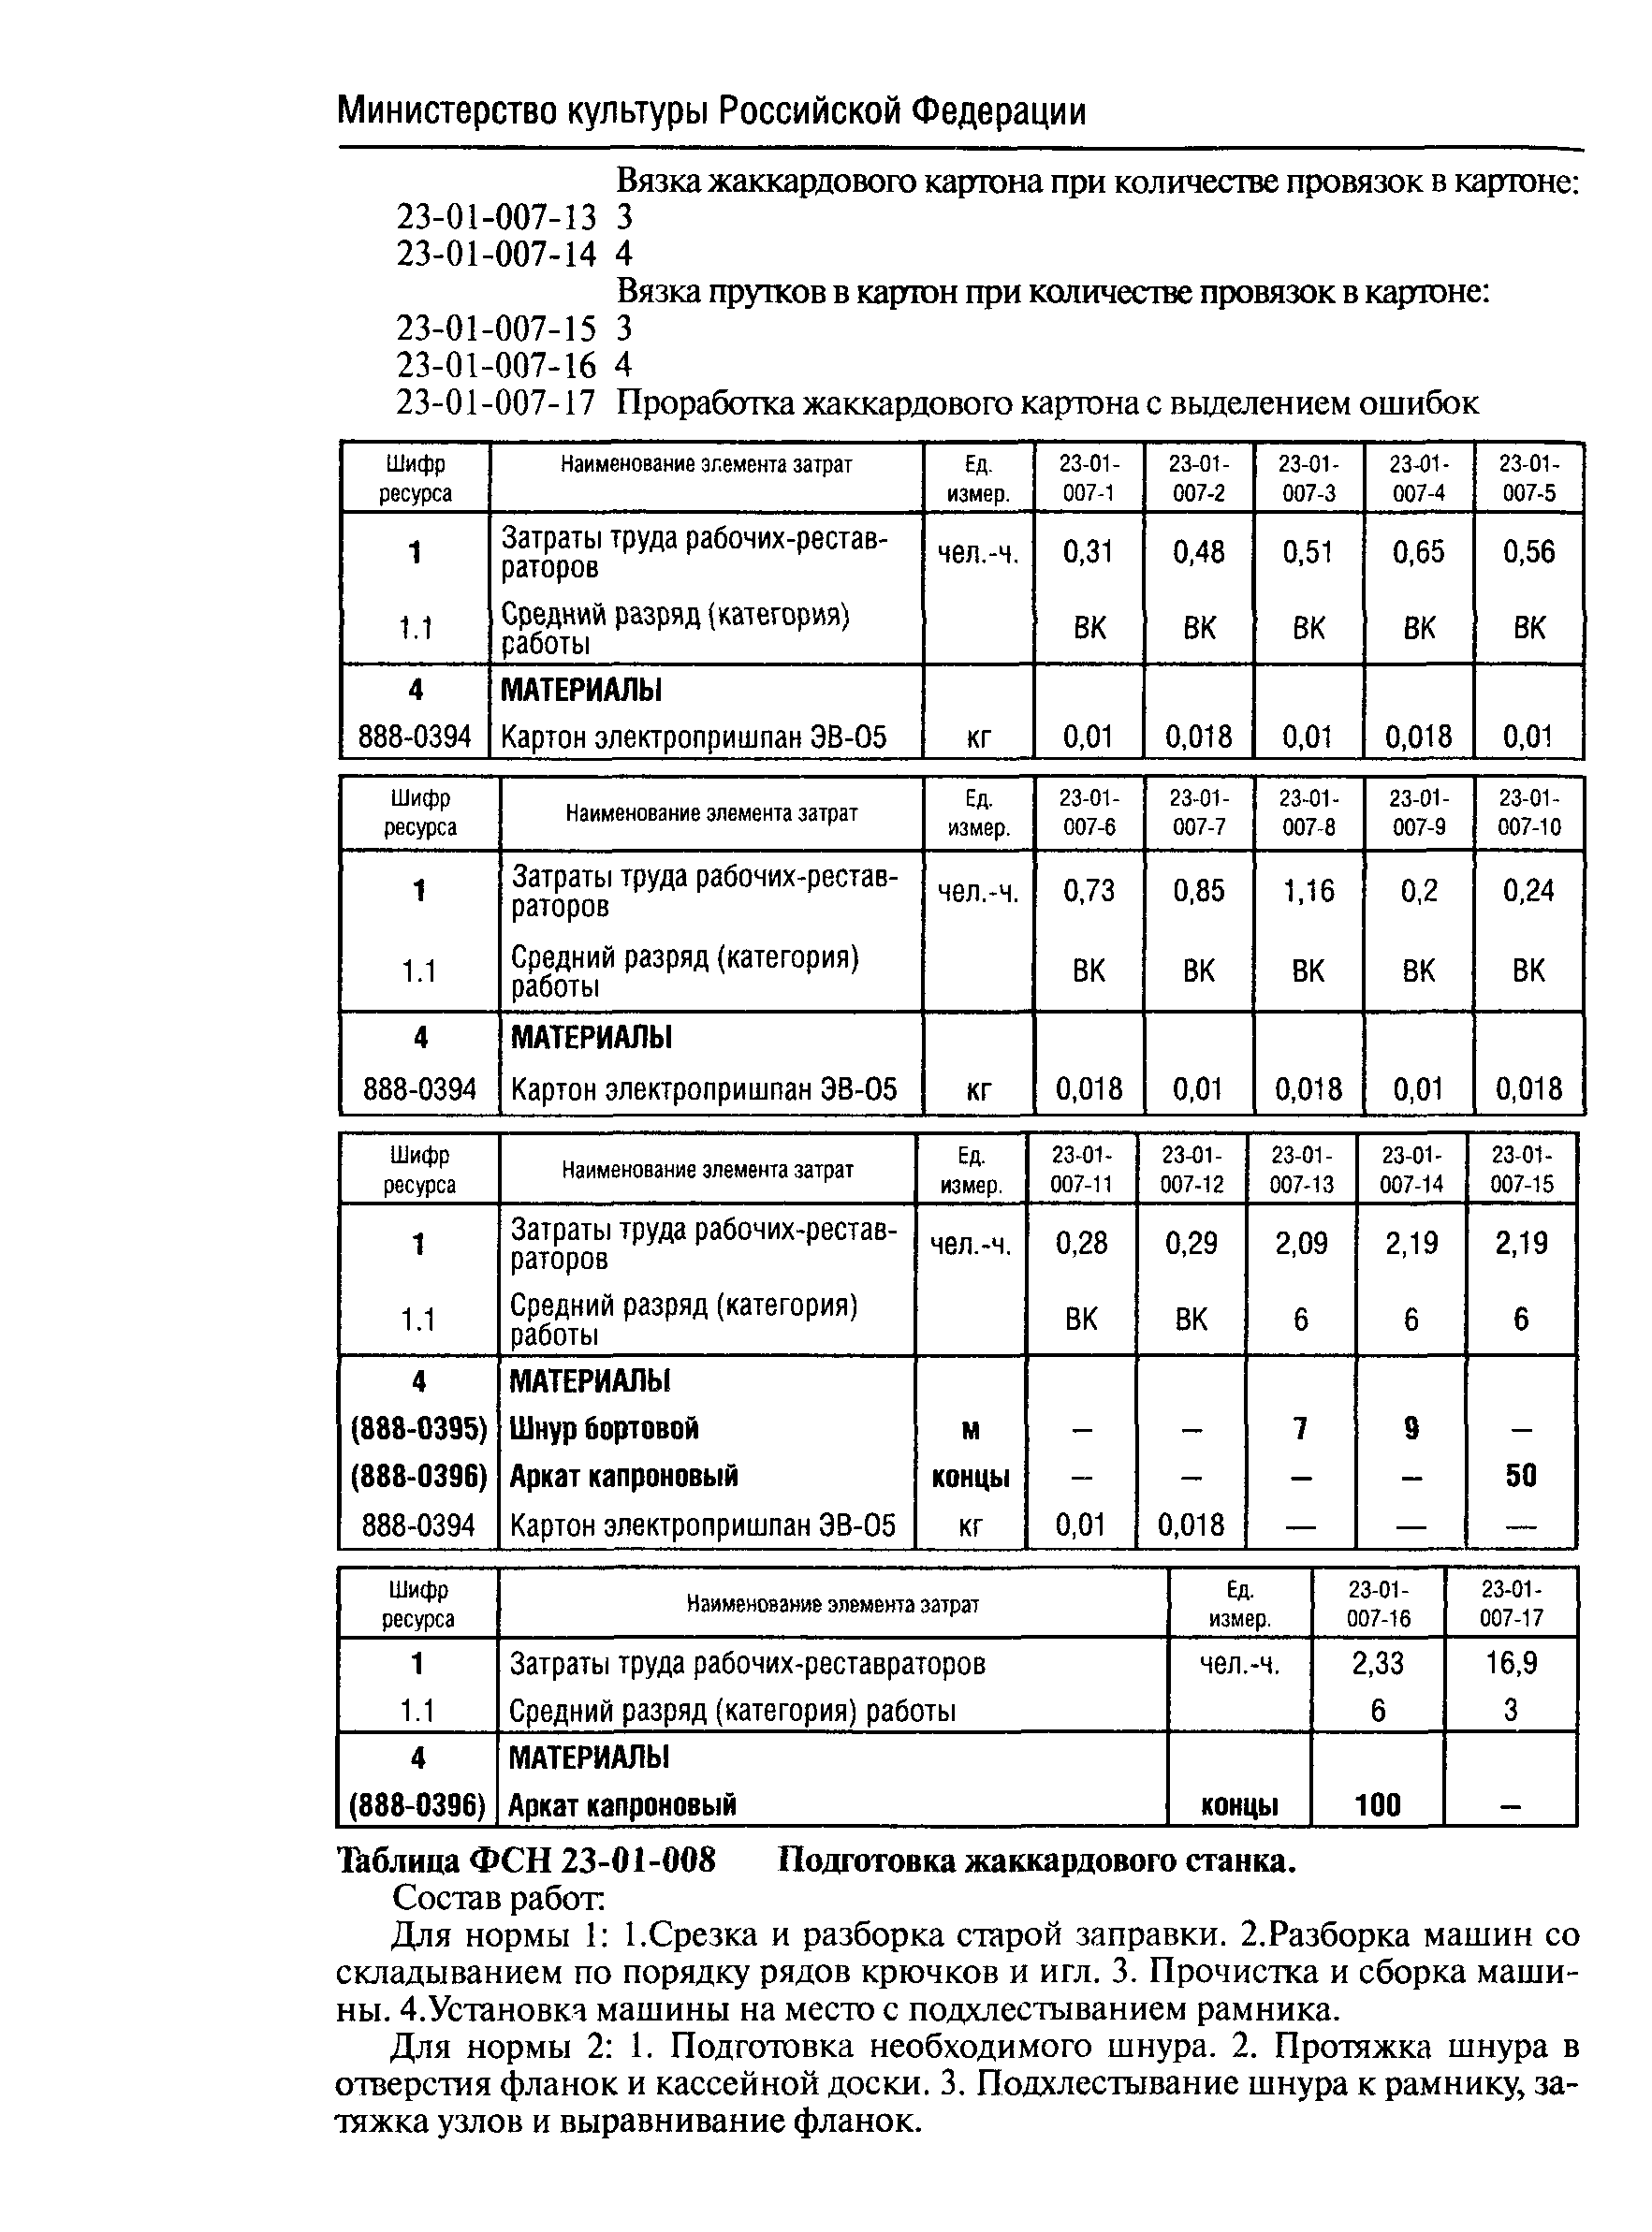 ФСН 2001-23-1